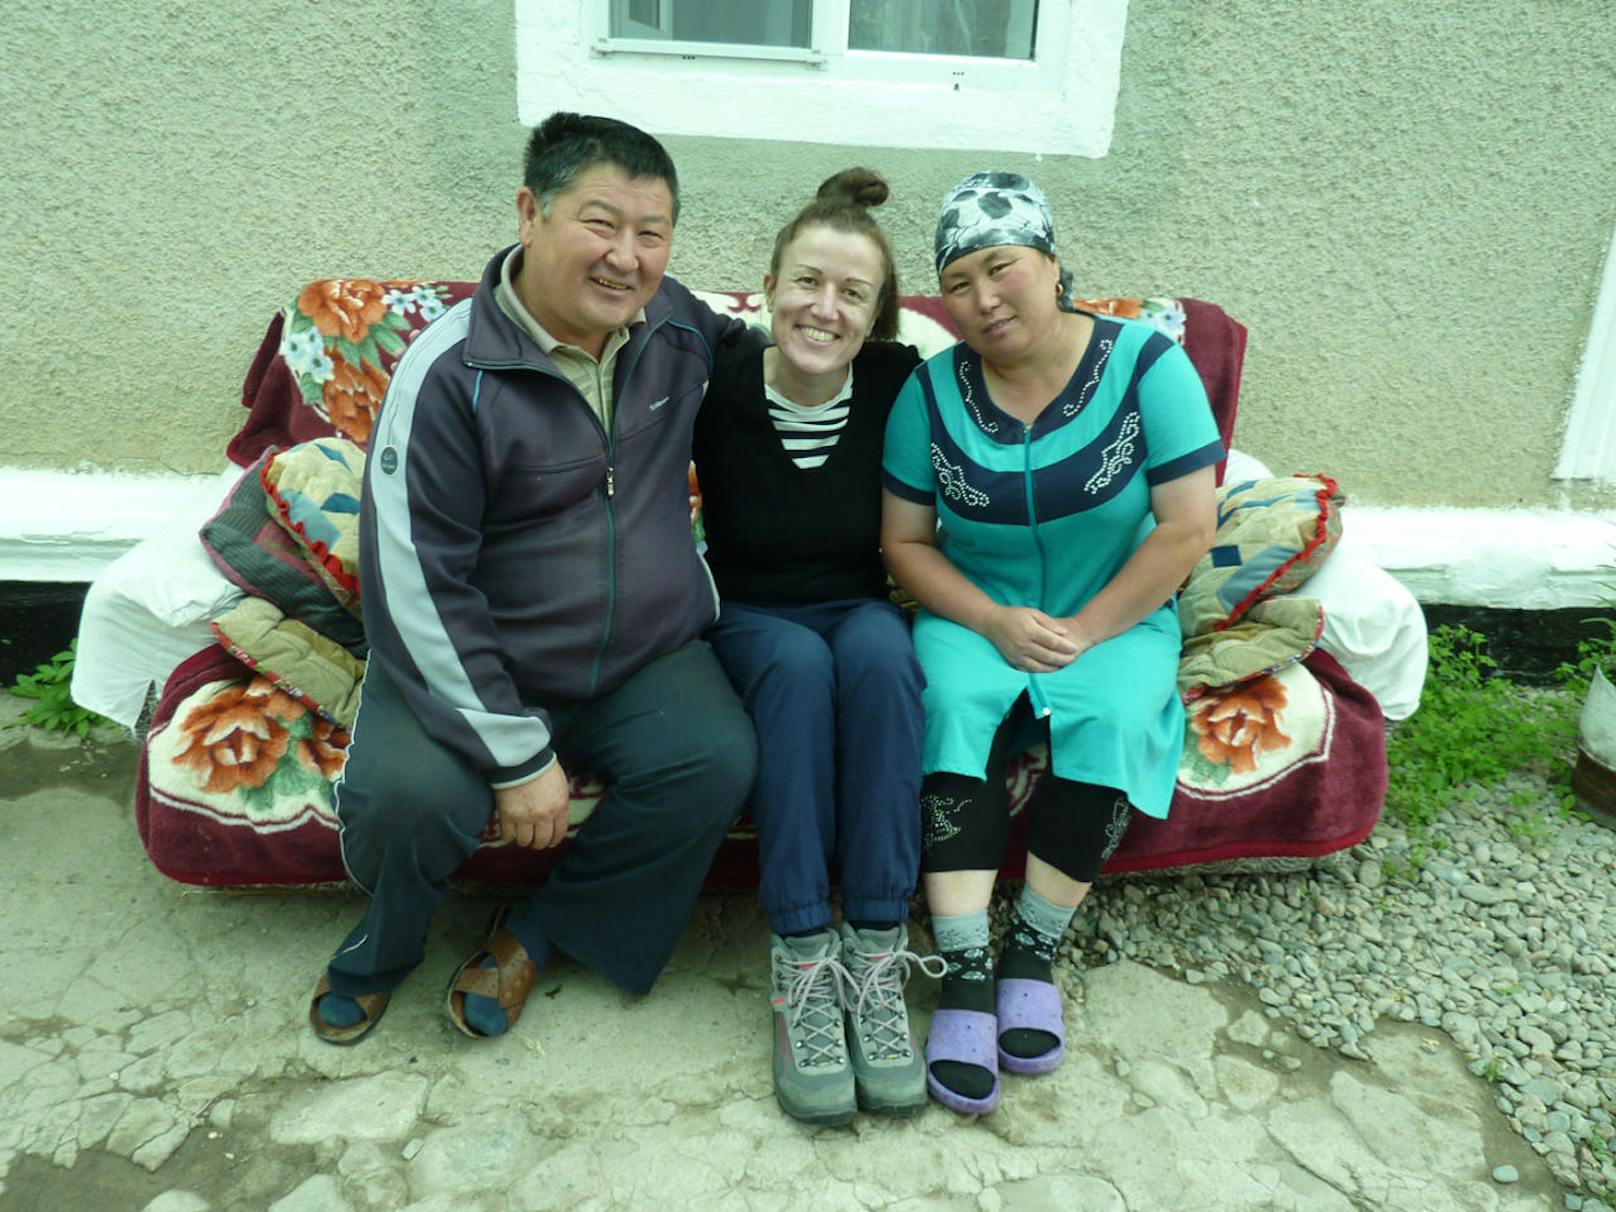 Sie hat zahlreiche neue Freunde in Kirgistan kennengelernt.